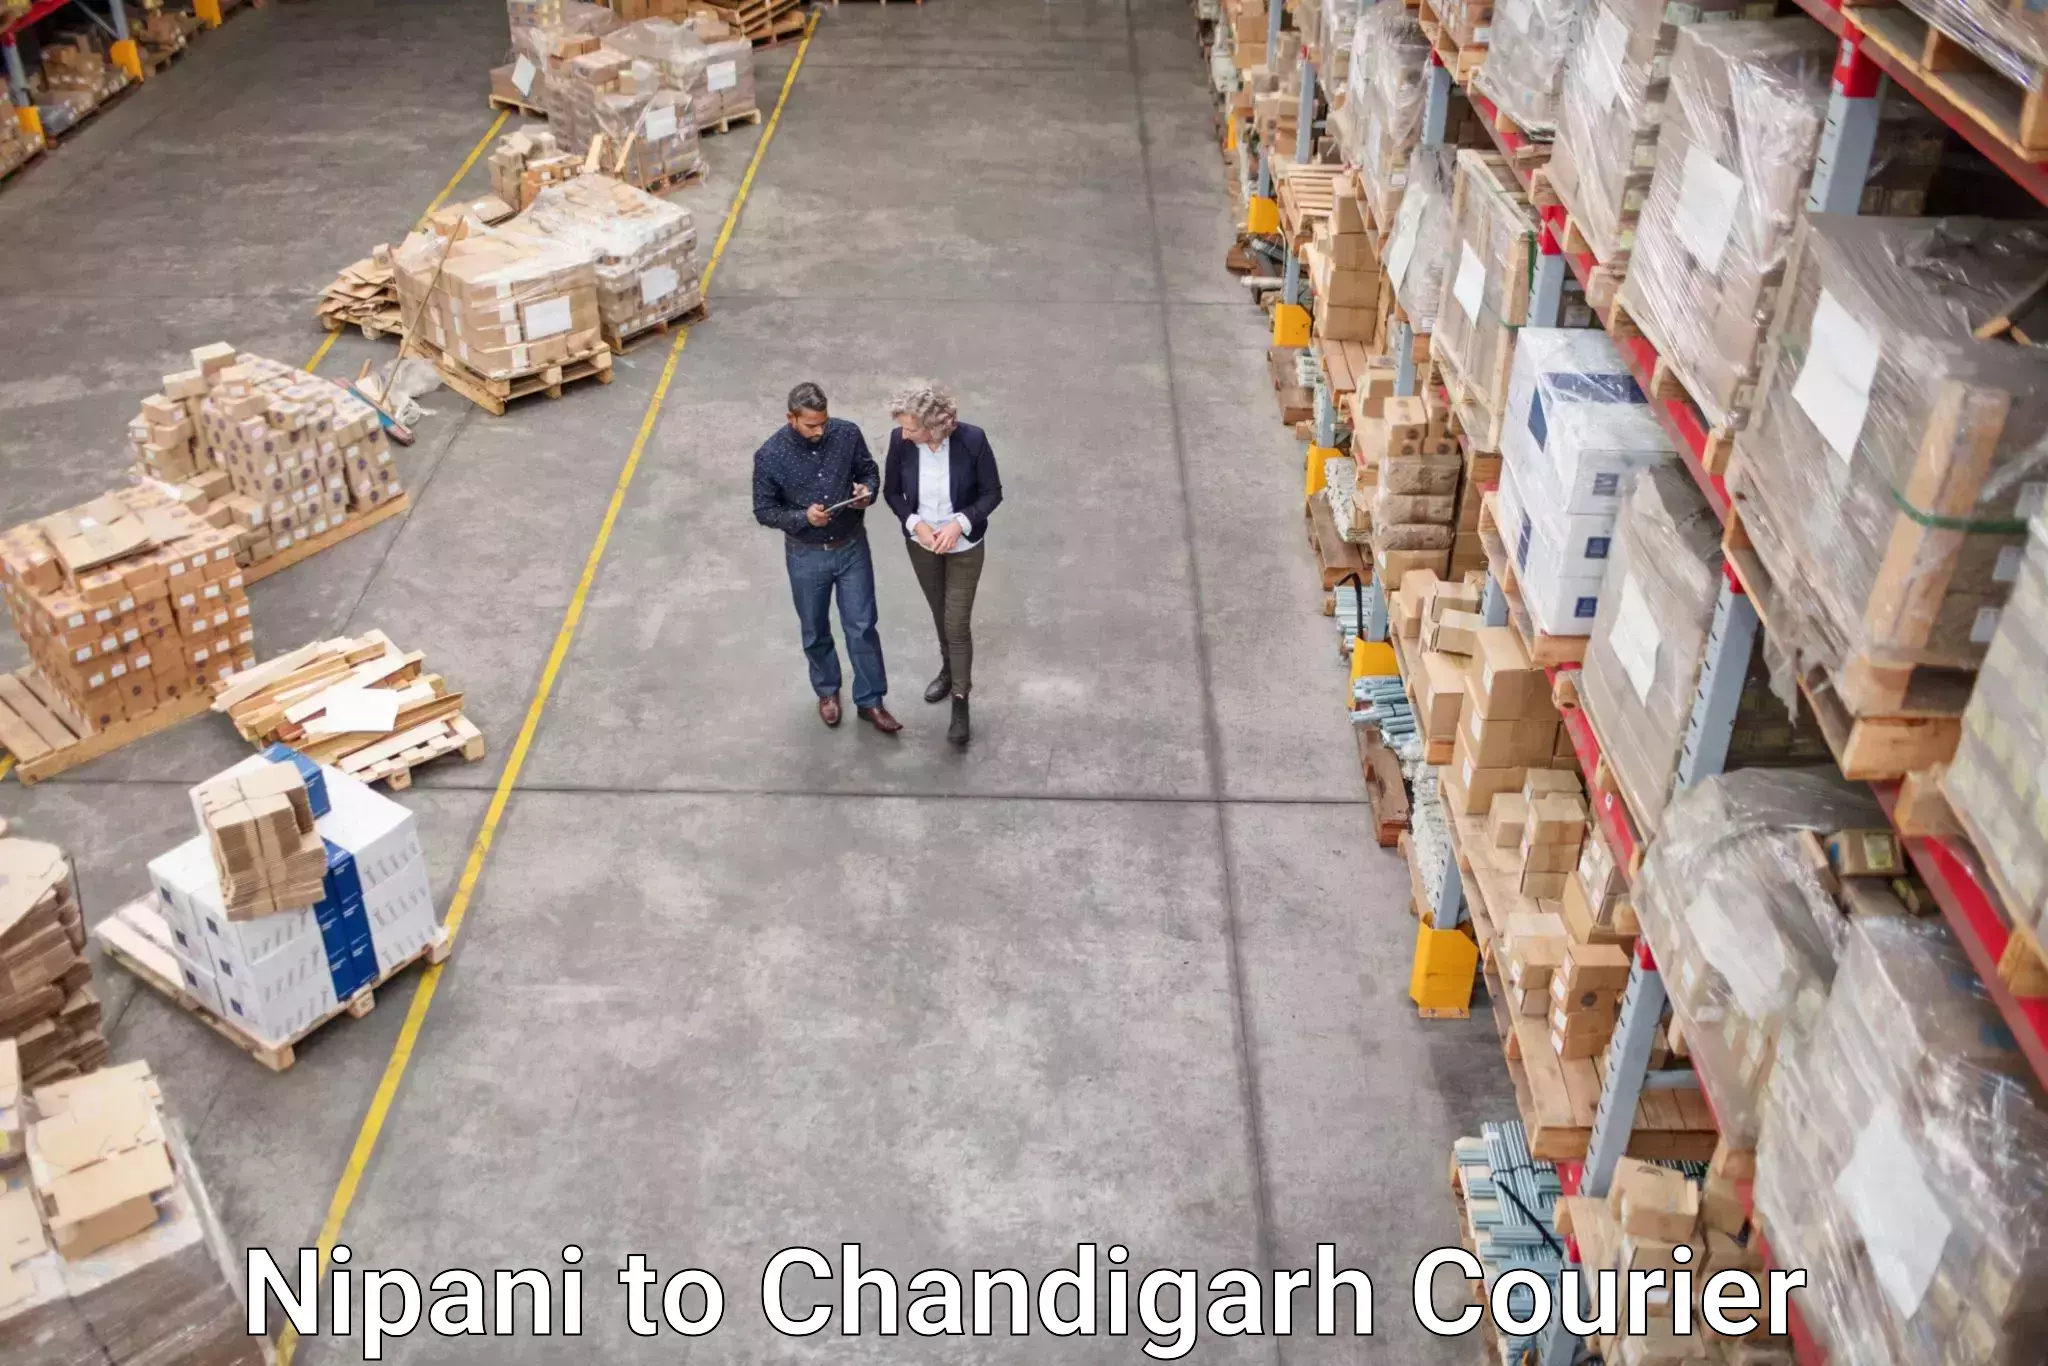 Express logistics providers Nipani to Chandigarh